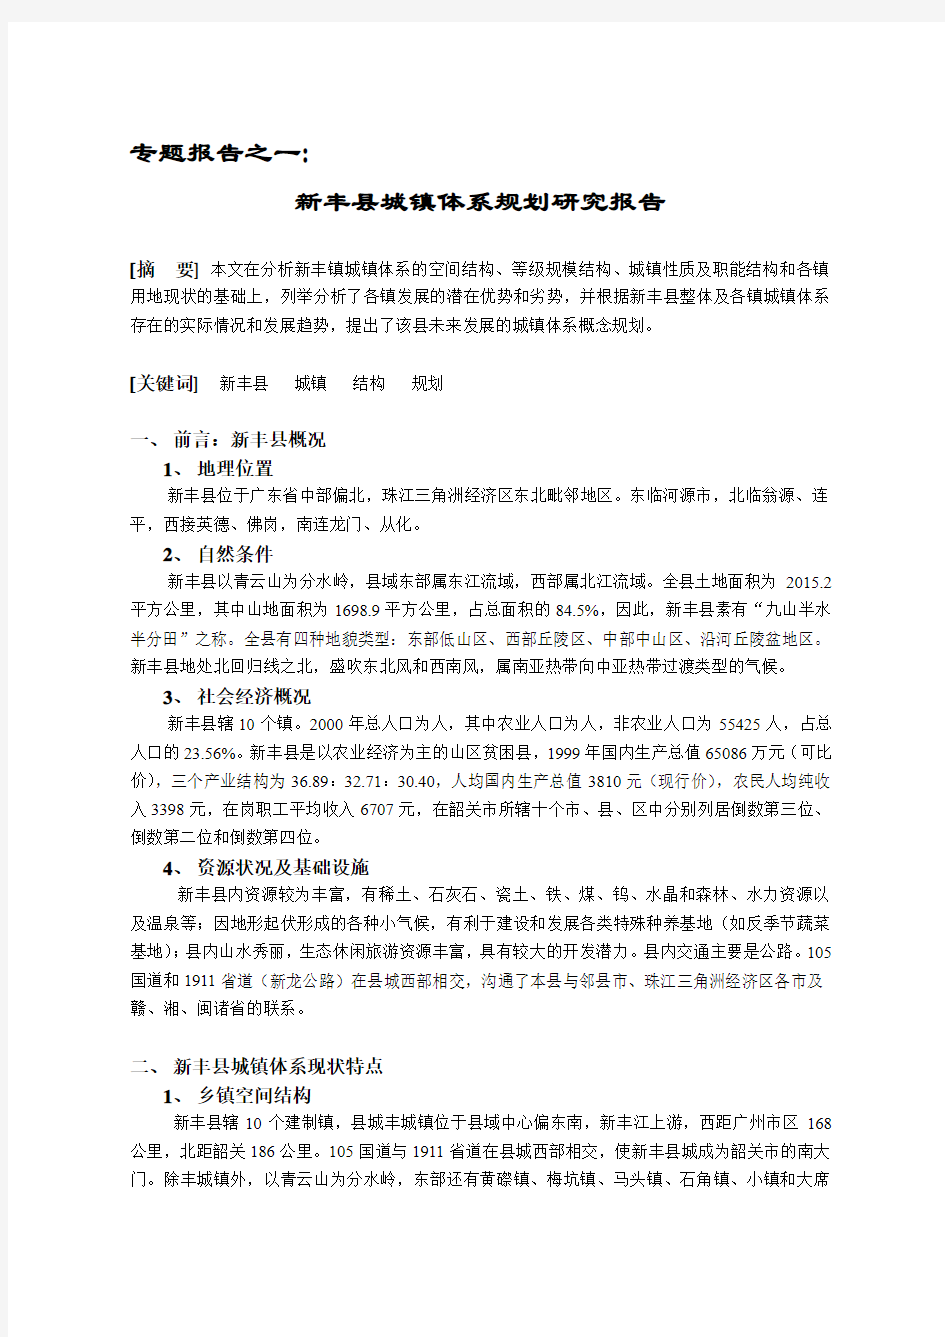 新丰县城镇体系规划研究专题报告范文